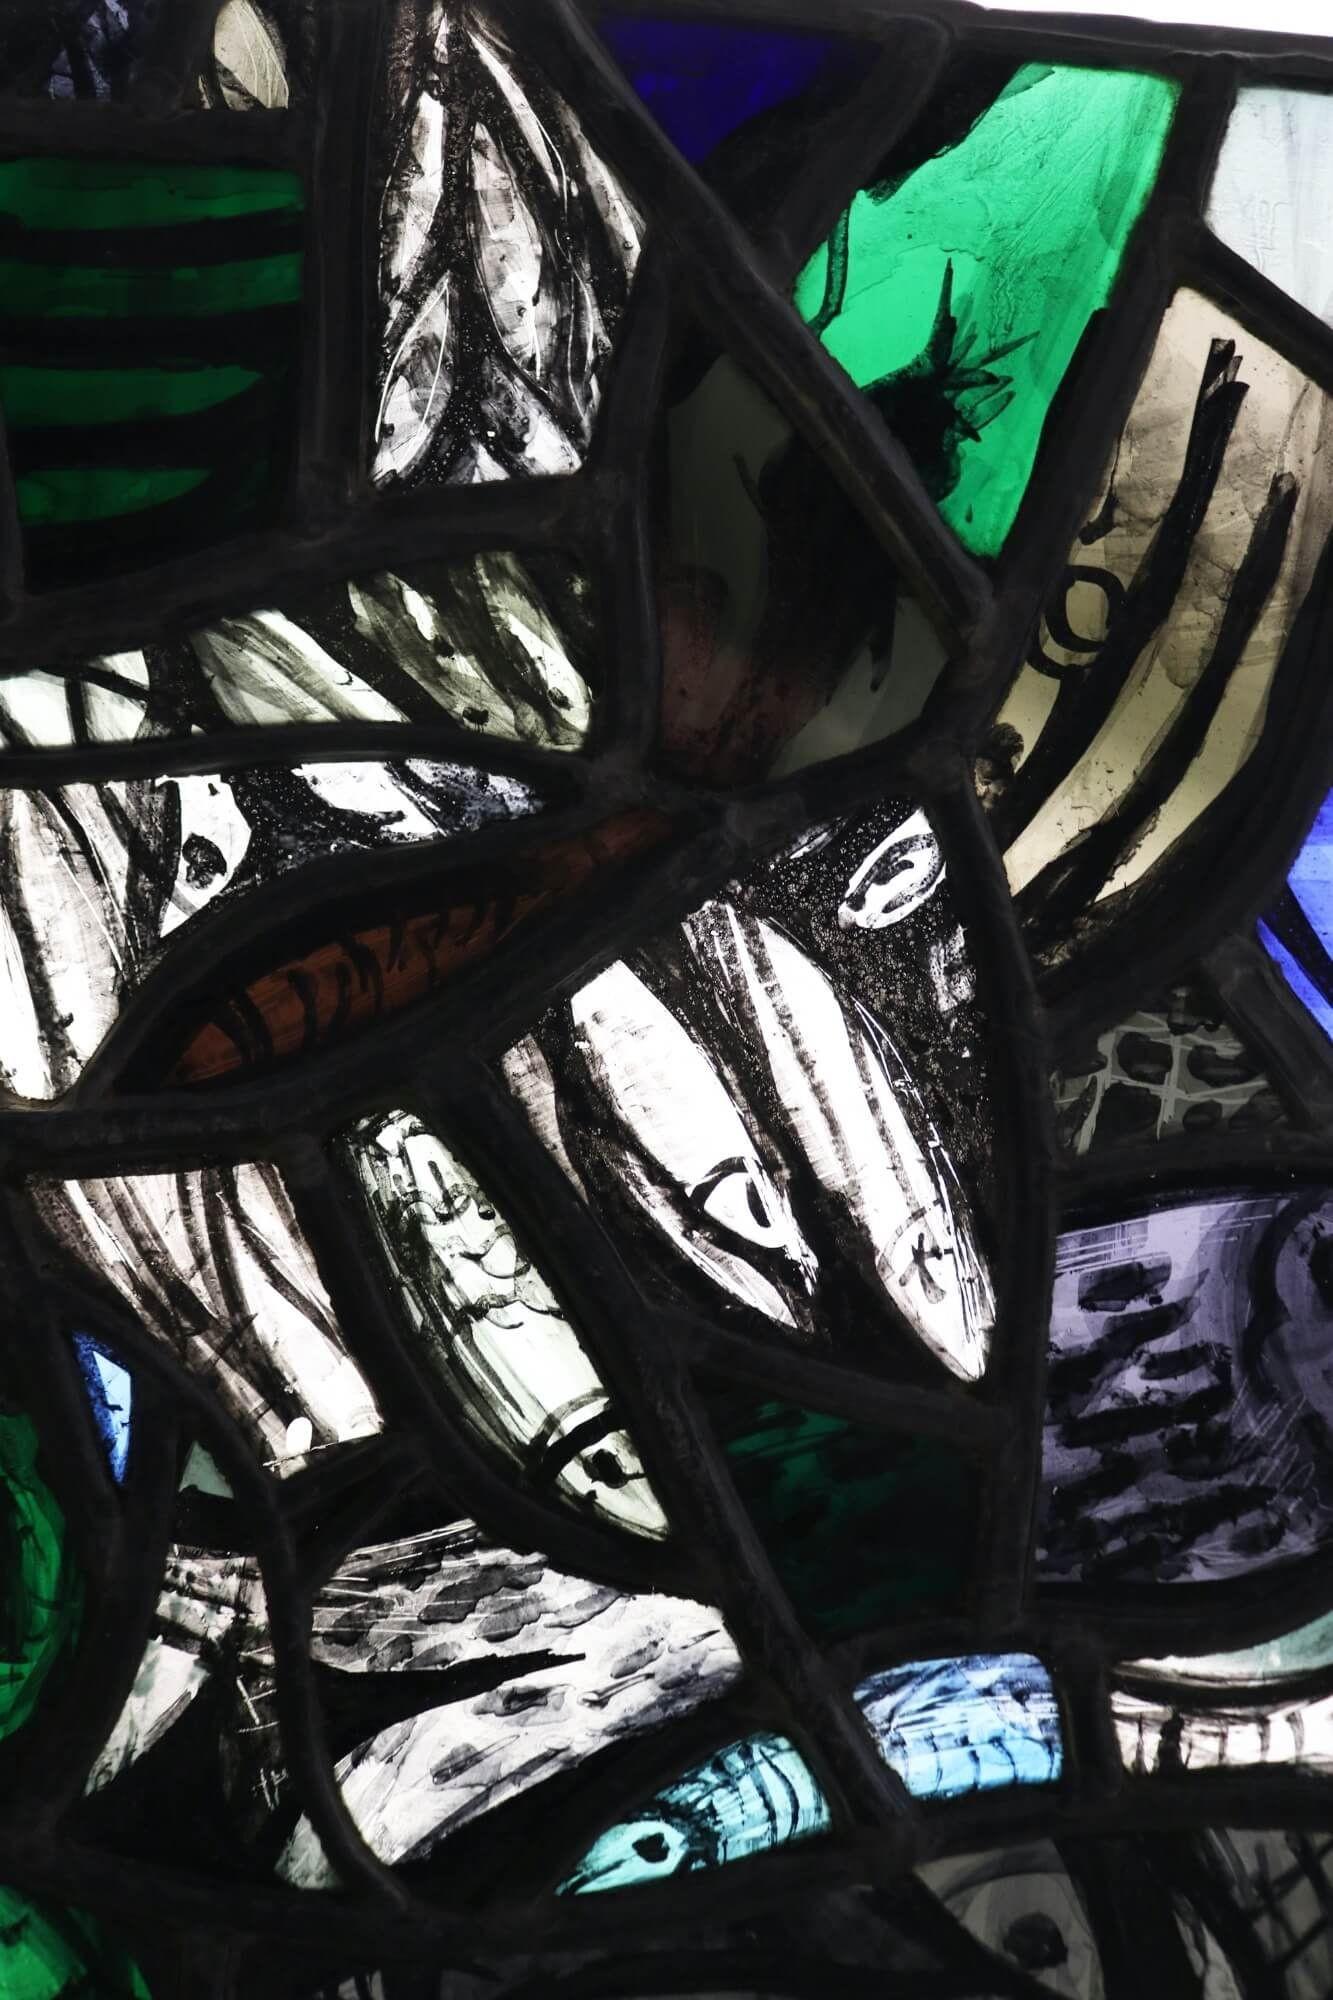 Eine zeitgenössische Glasmalerei aus dem Studio von Patrick Reyntiens (1925-2021). Diese dem Künstler zugeschriebene Glasmalerei zeigt ein Netz oder einen Fischschwarm, der möglicherweise von John Piper beeinflusst ist, mit handgemalten